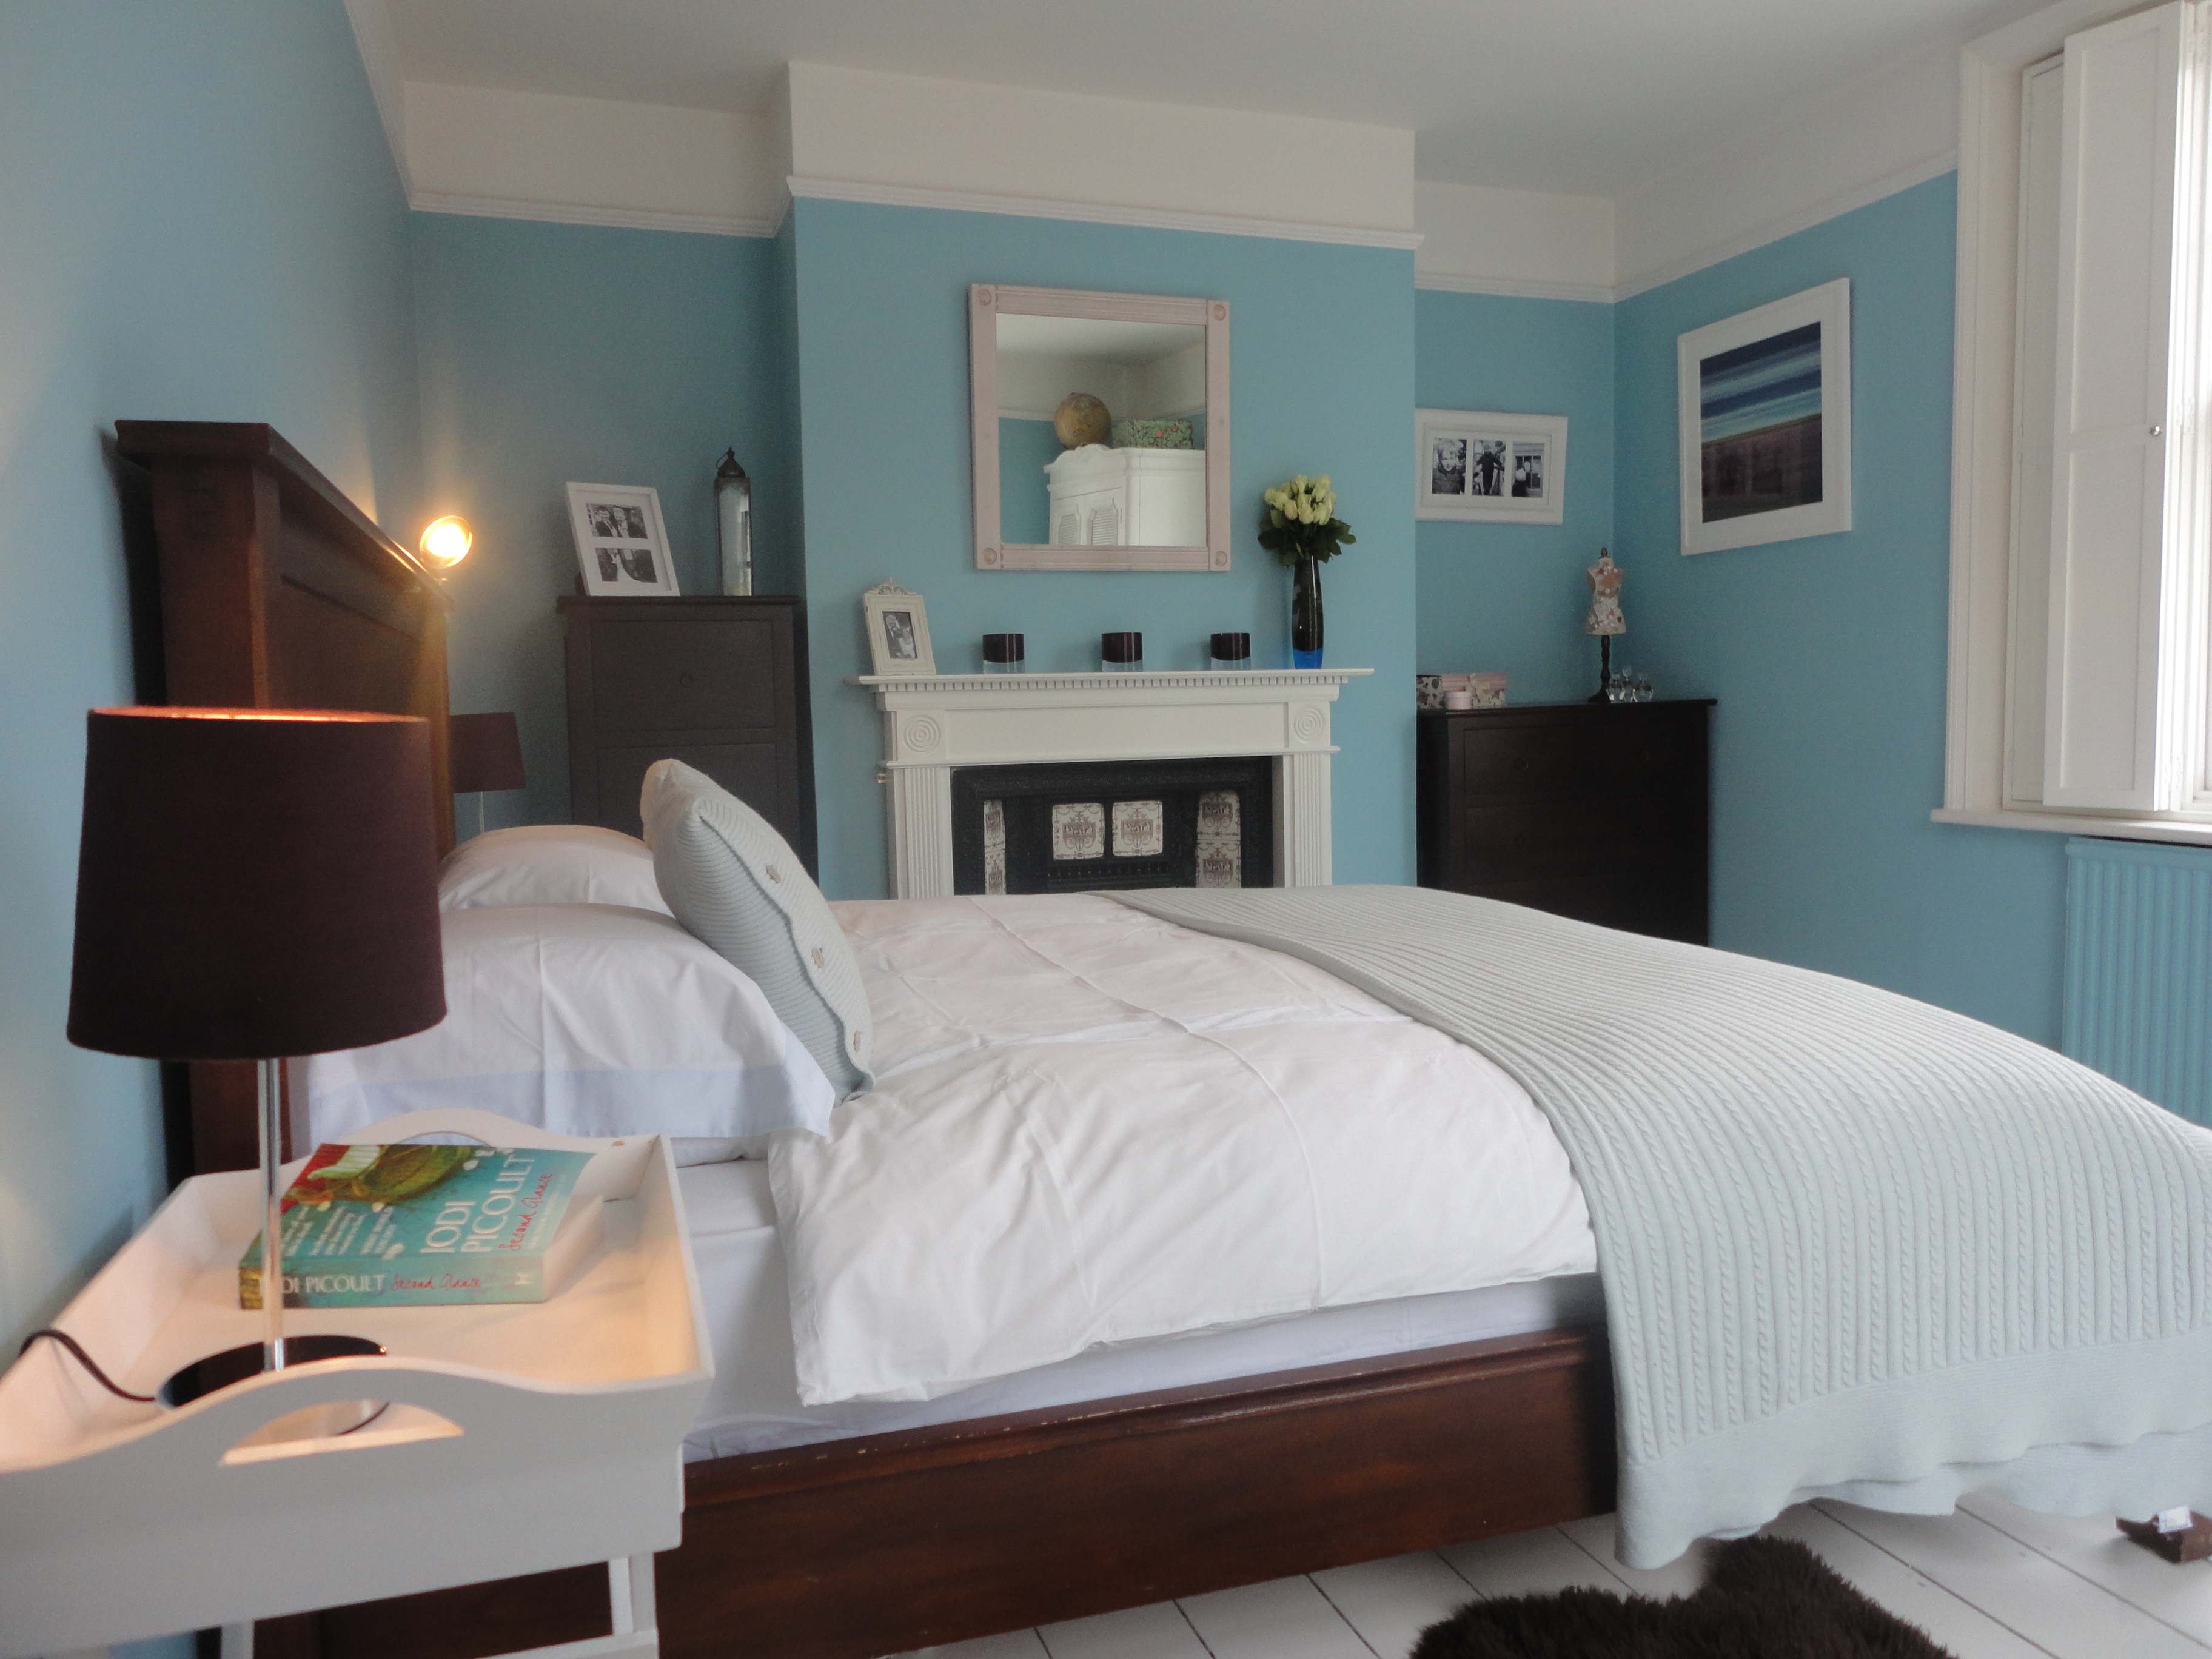 Hiasan dalaman bilik tidur menggunakan powdery blue sebagai warna tema